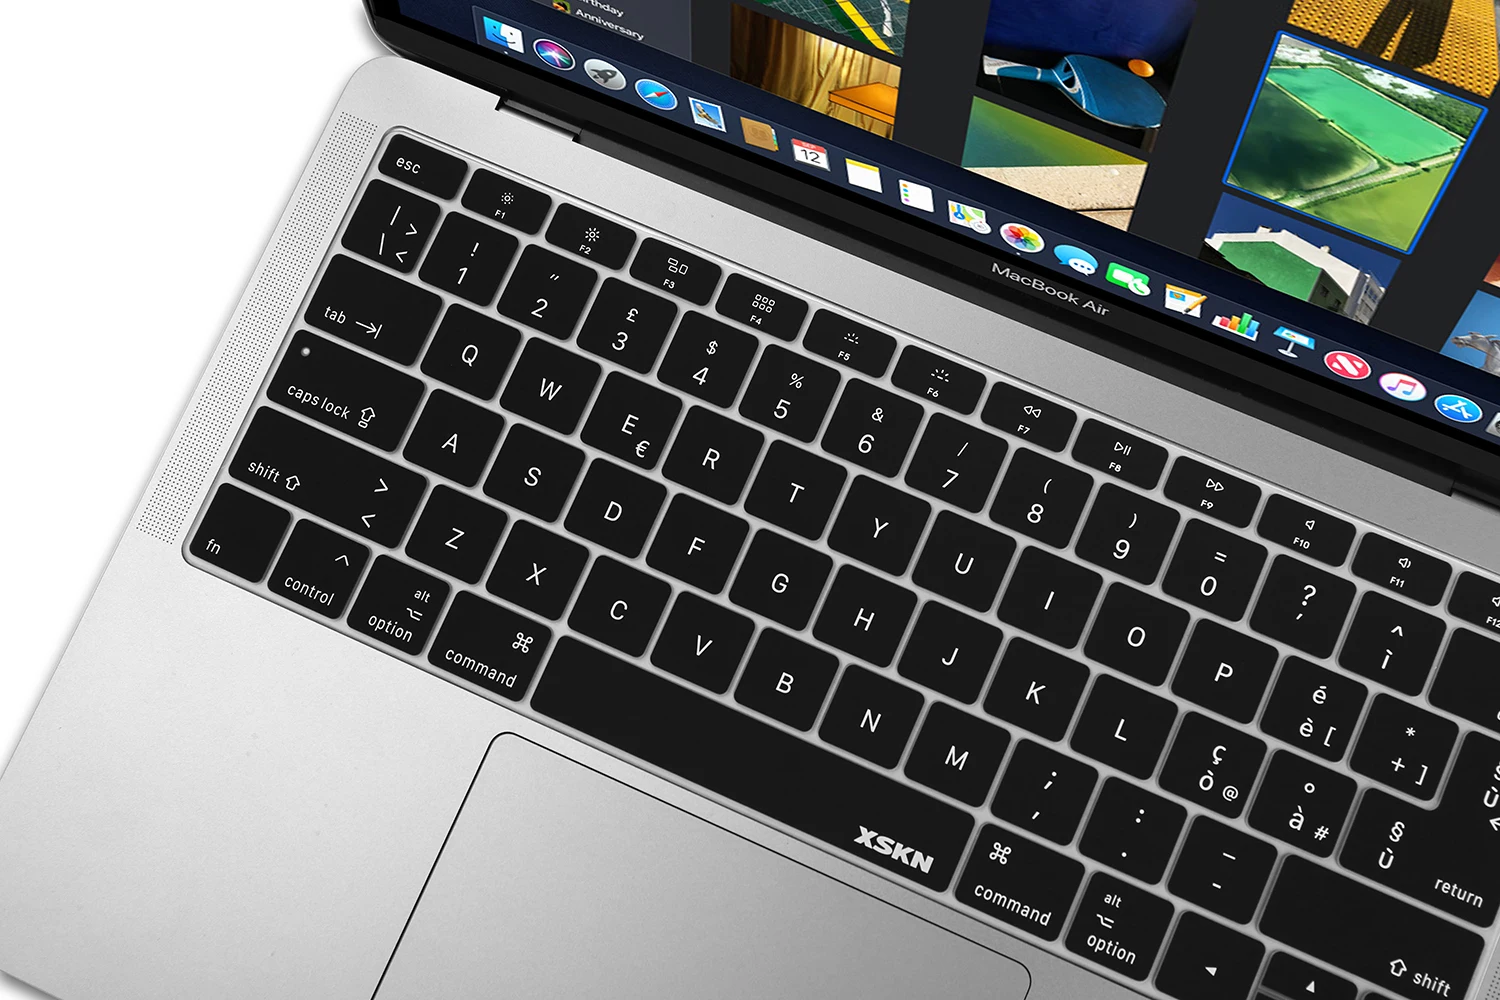 

Черная Силиконовая накладка на клавиатуру XSKN, США, ЕС, итальянский язык, для нового MacBook Air 13 дюймов с Touch ID A1932 (2018 +)